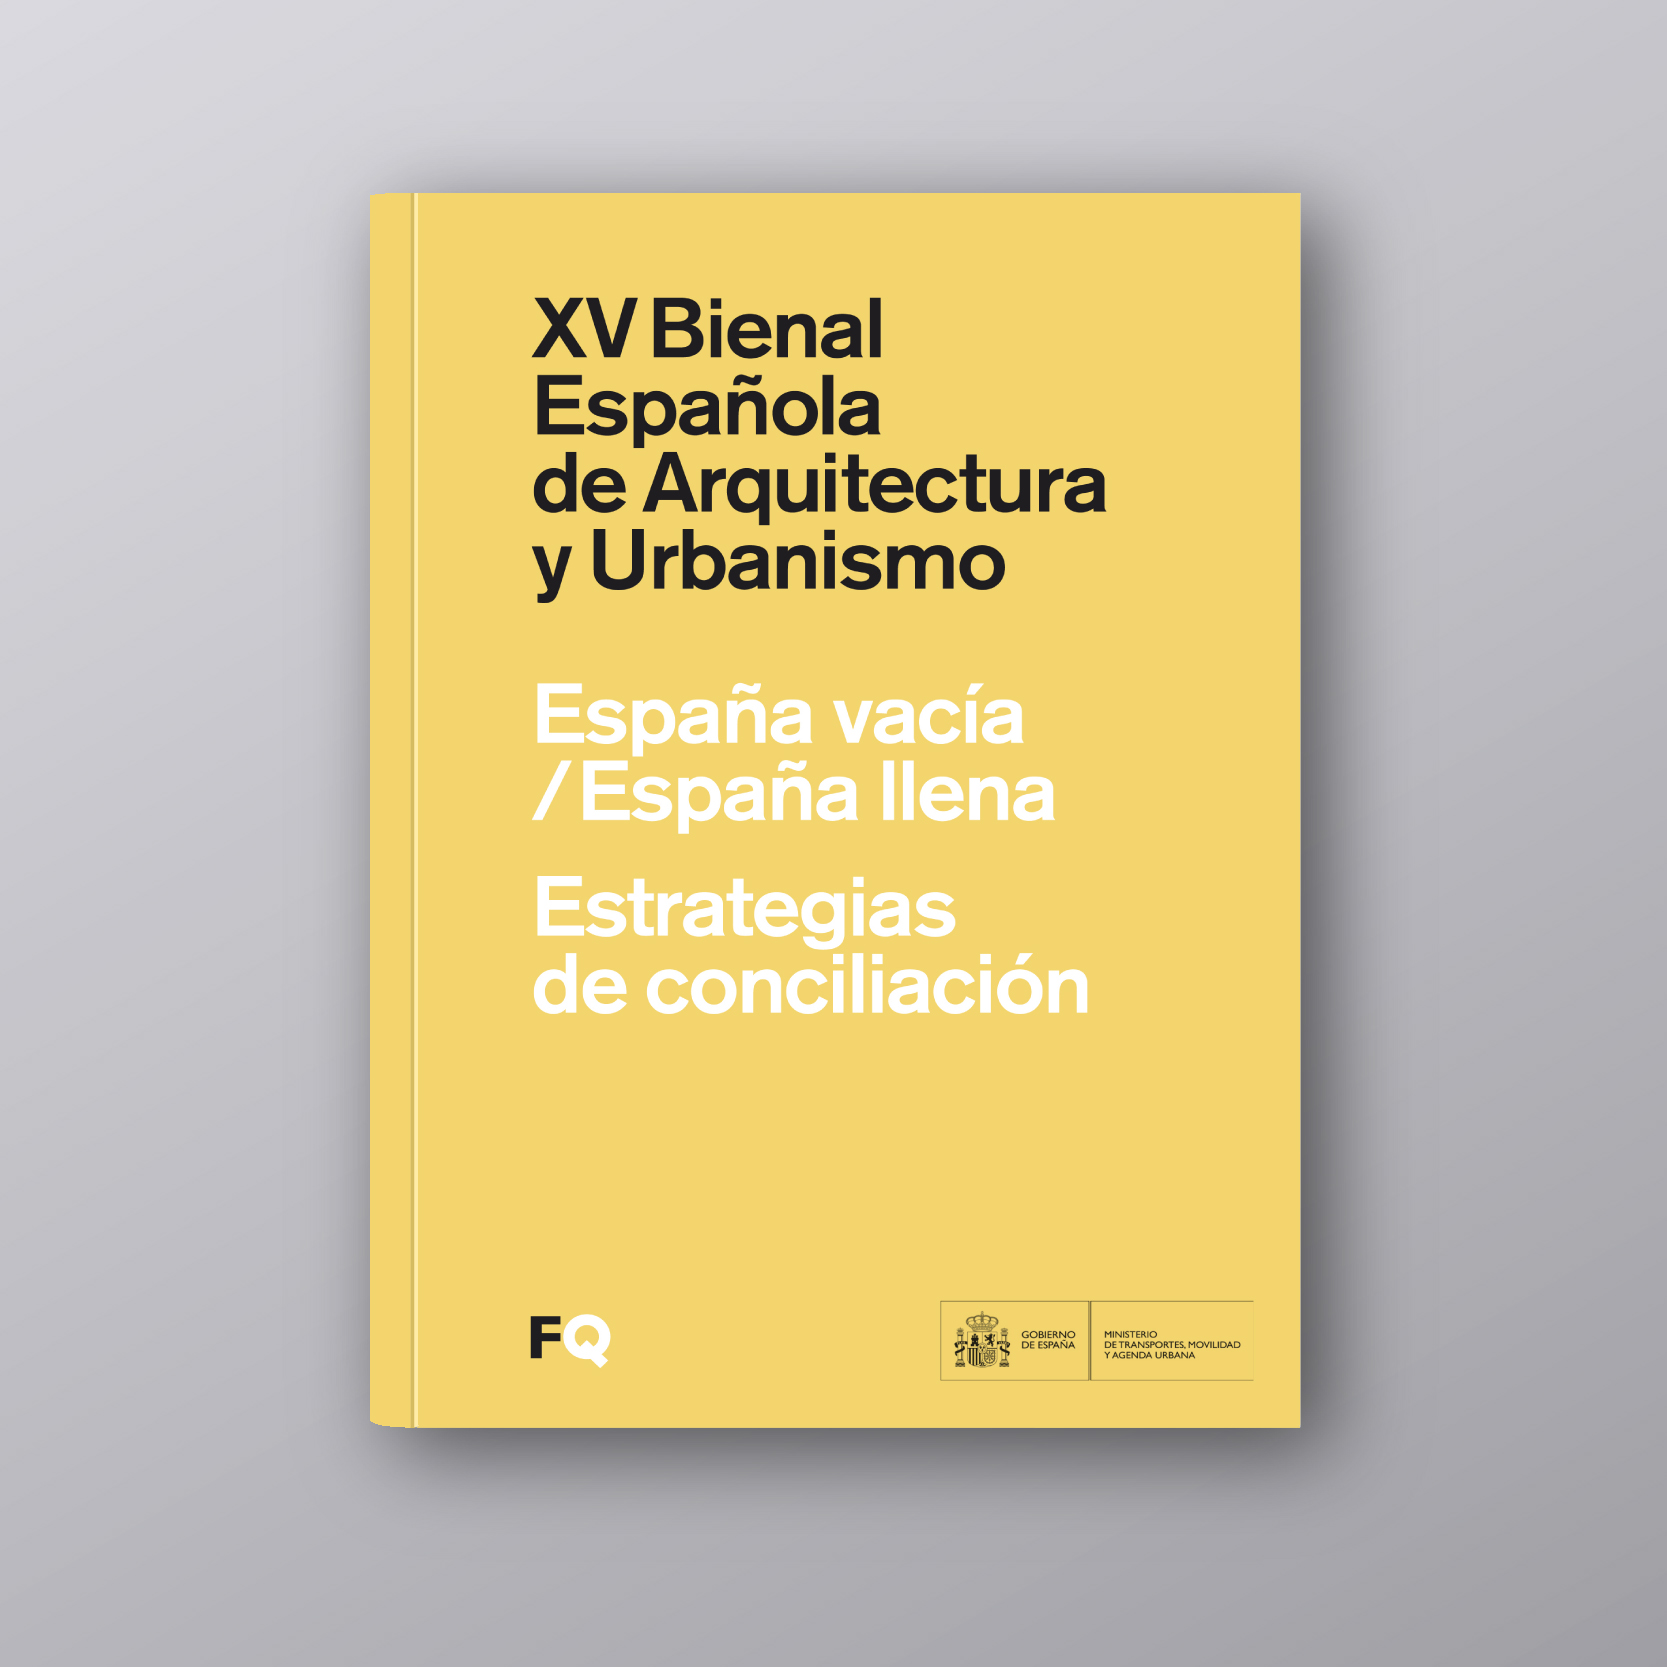 Catálogo de la XV Bienal | XV Bienal Española de Arquitectura y Urbanismo